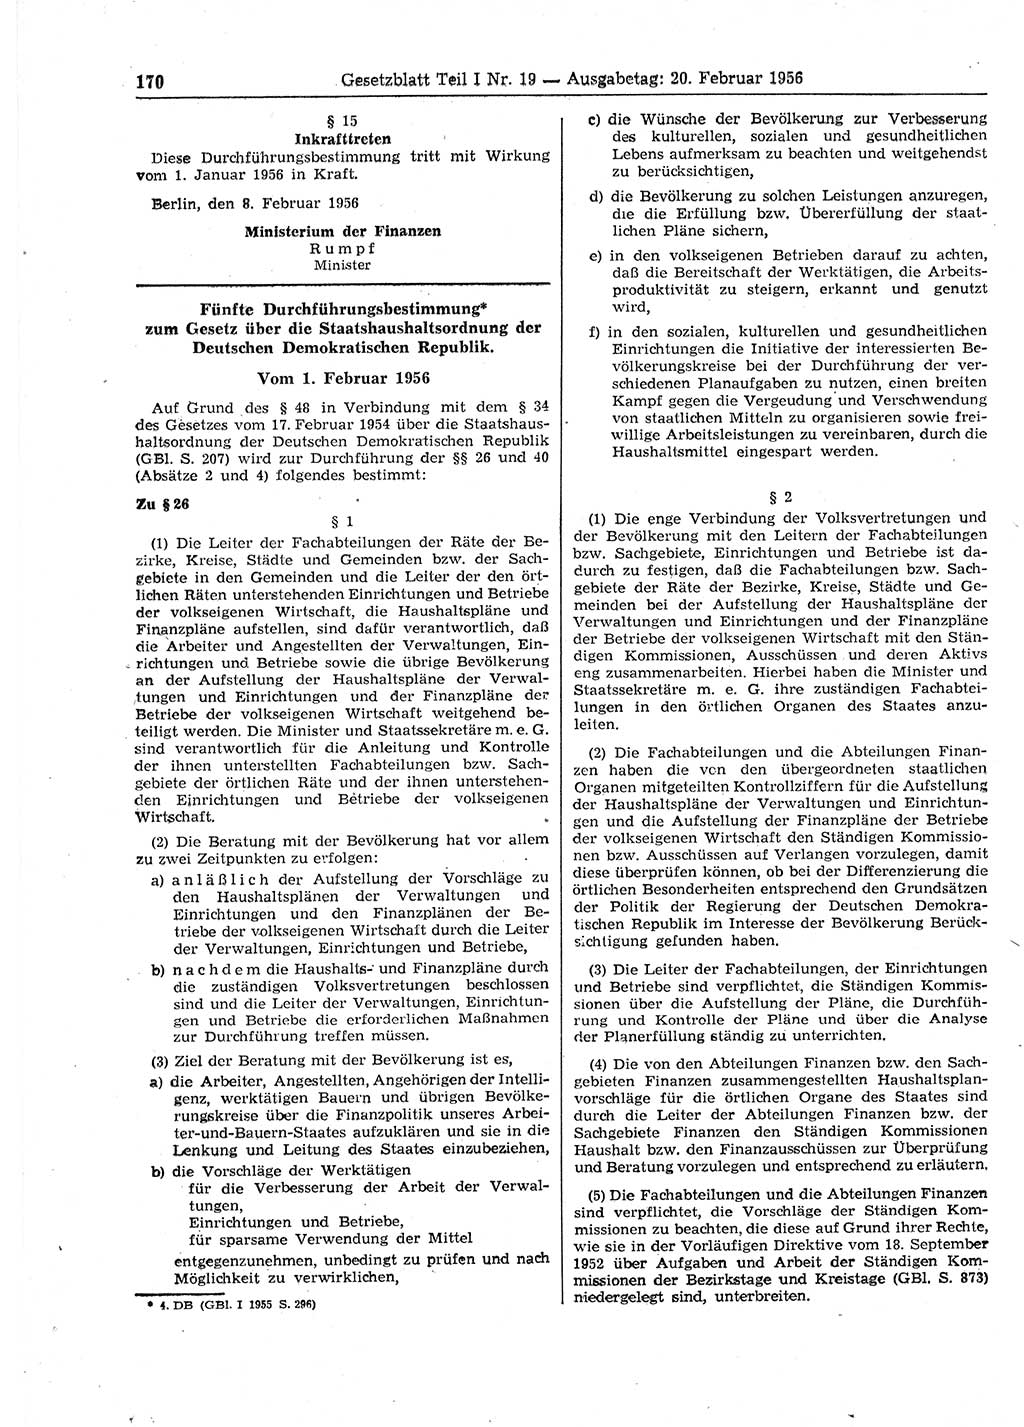 Gesetzblatt (GBl.) der Deutschen Demokratischen Republik (DDR) Teil Ⅰ 1956, Seite 170 (GBl. DDR Ⅰ 1956, S. 170)